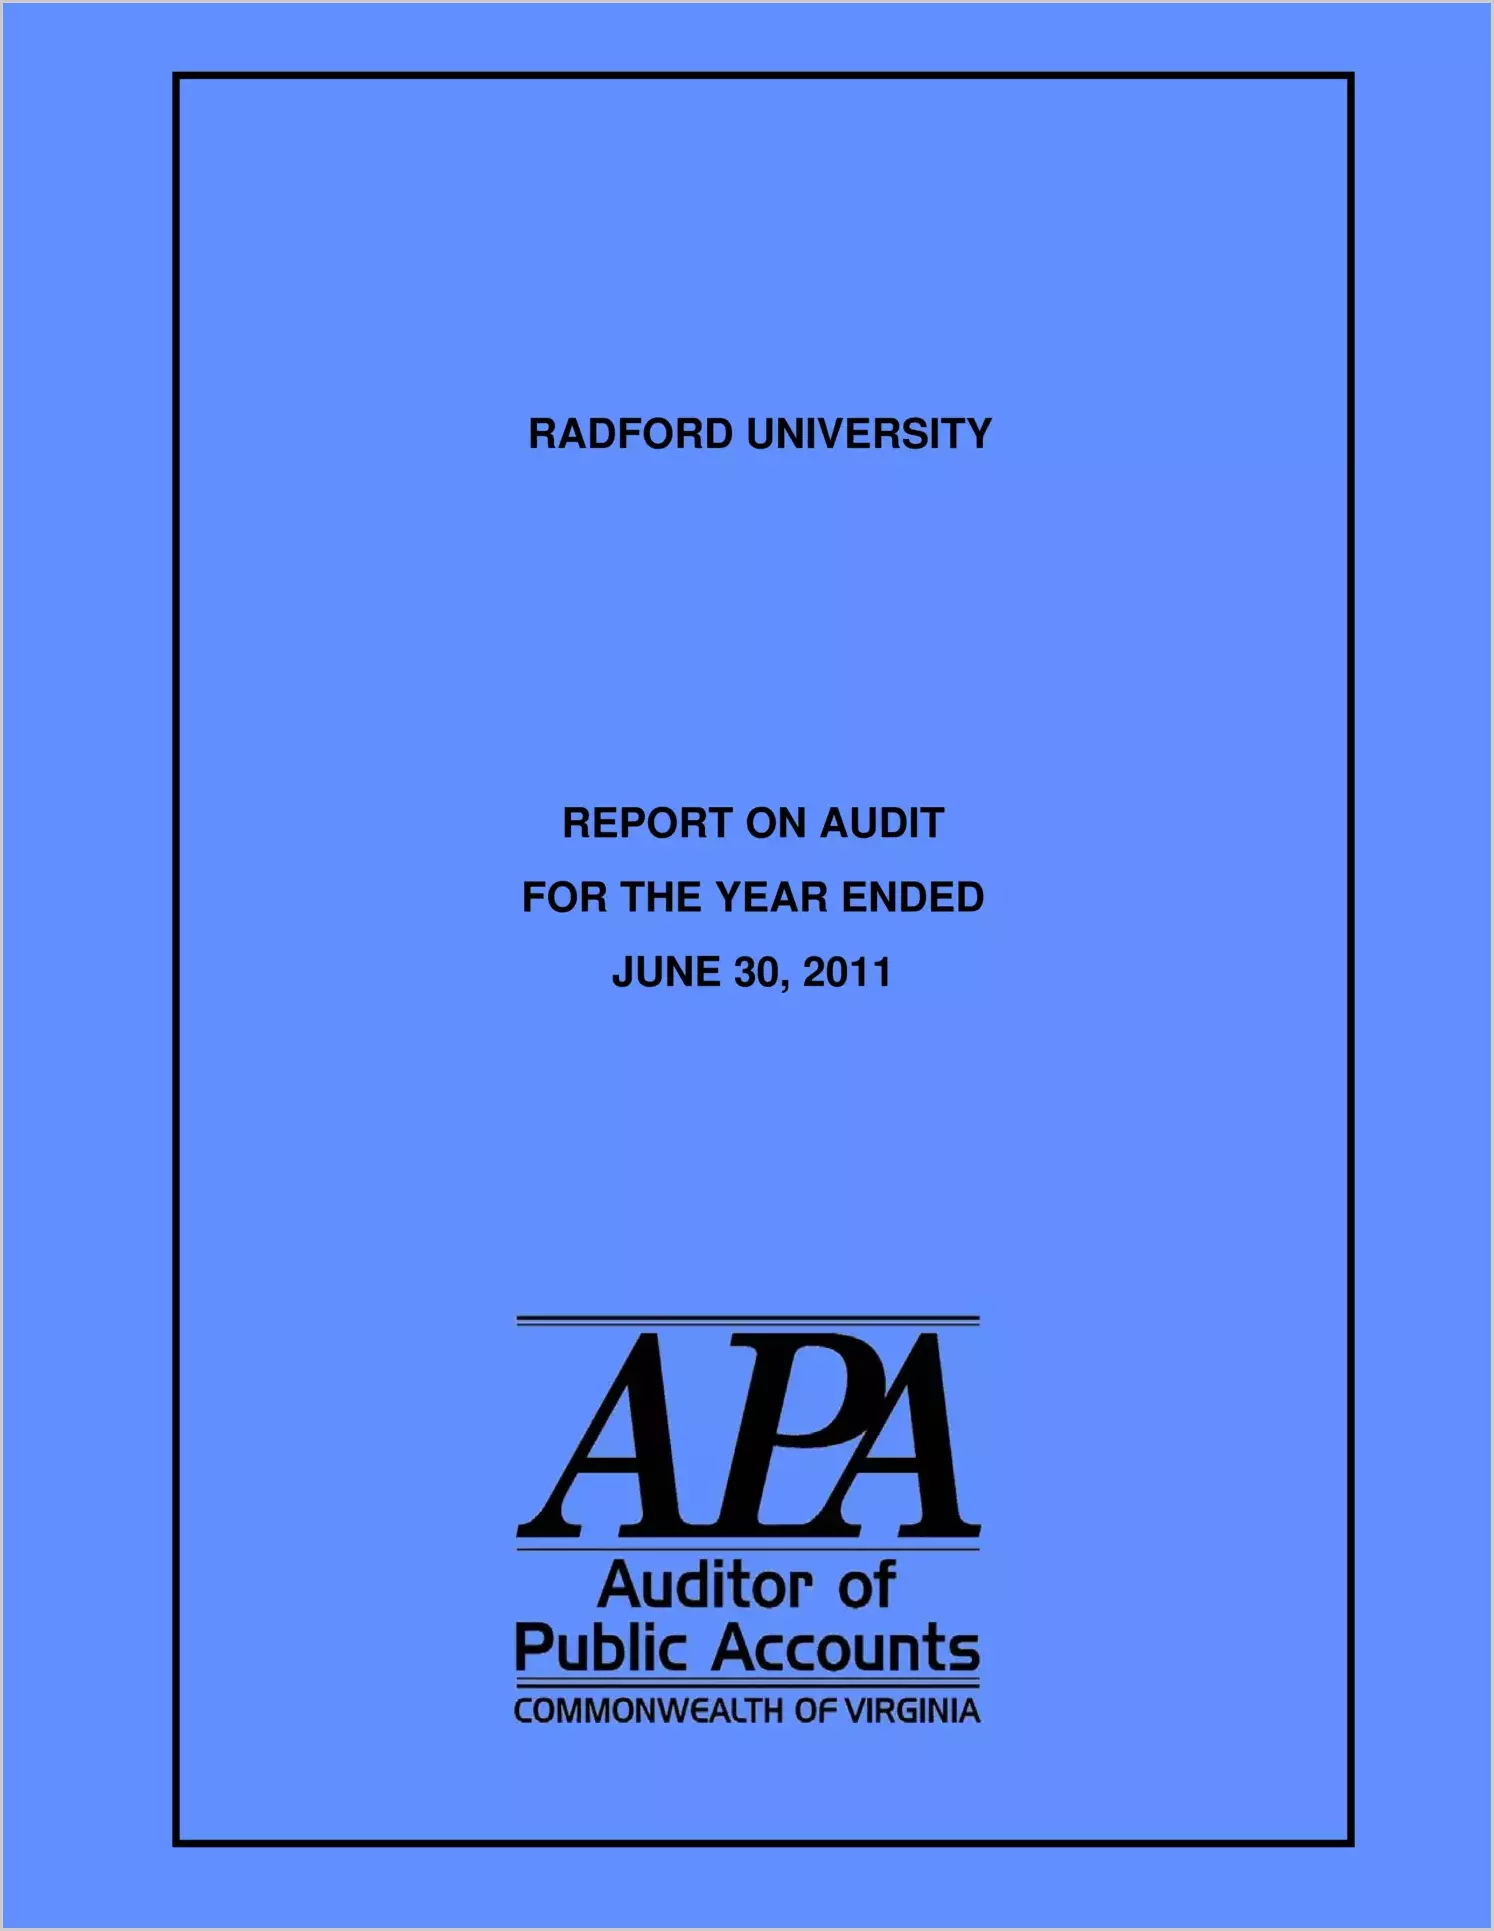 Radford University report on audit for year ending June 30, 2011